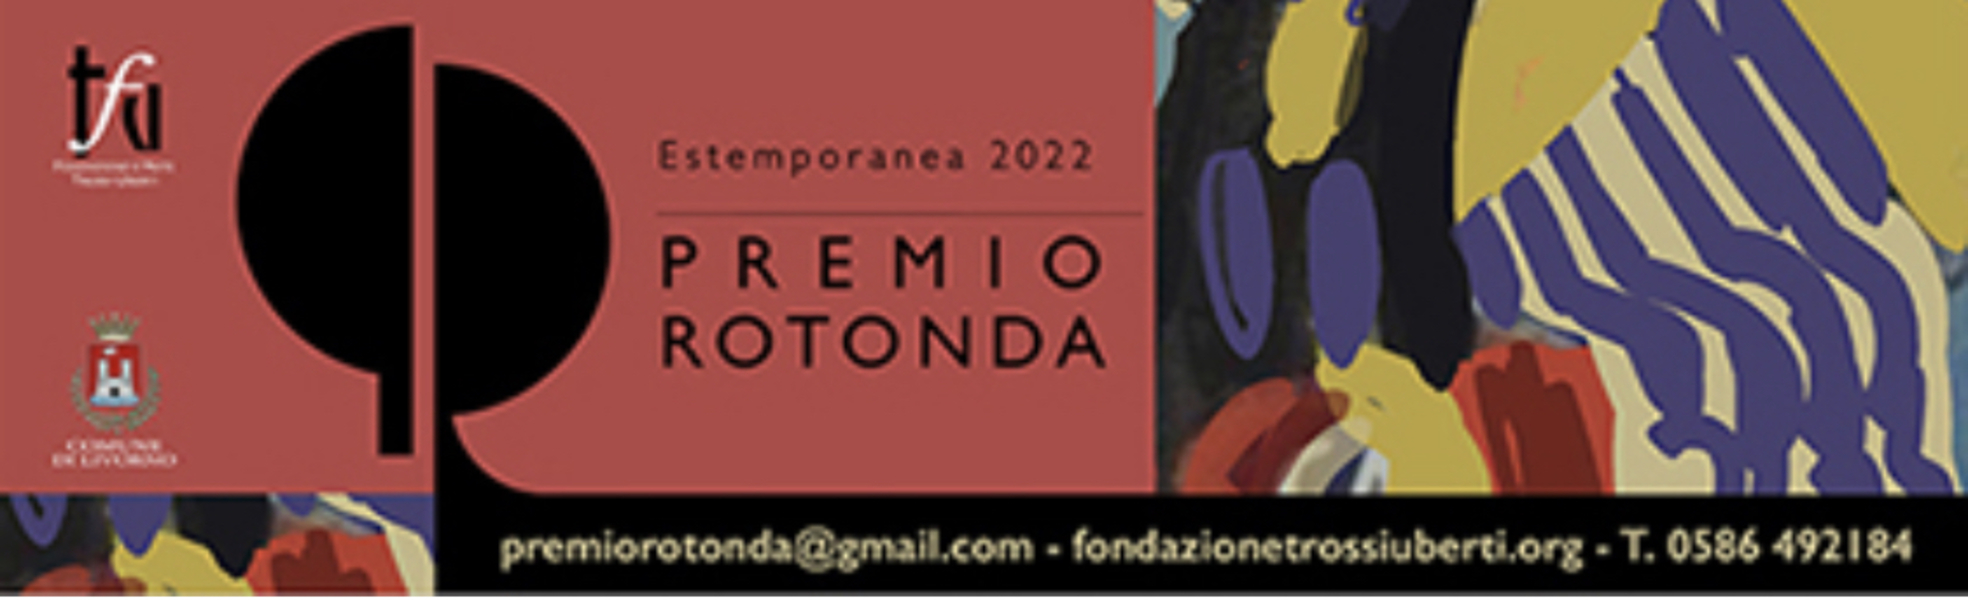 Premio Rotonda 2022 - Estemporanea 